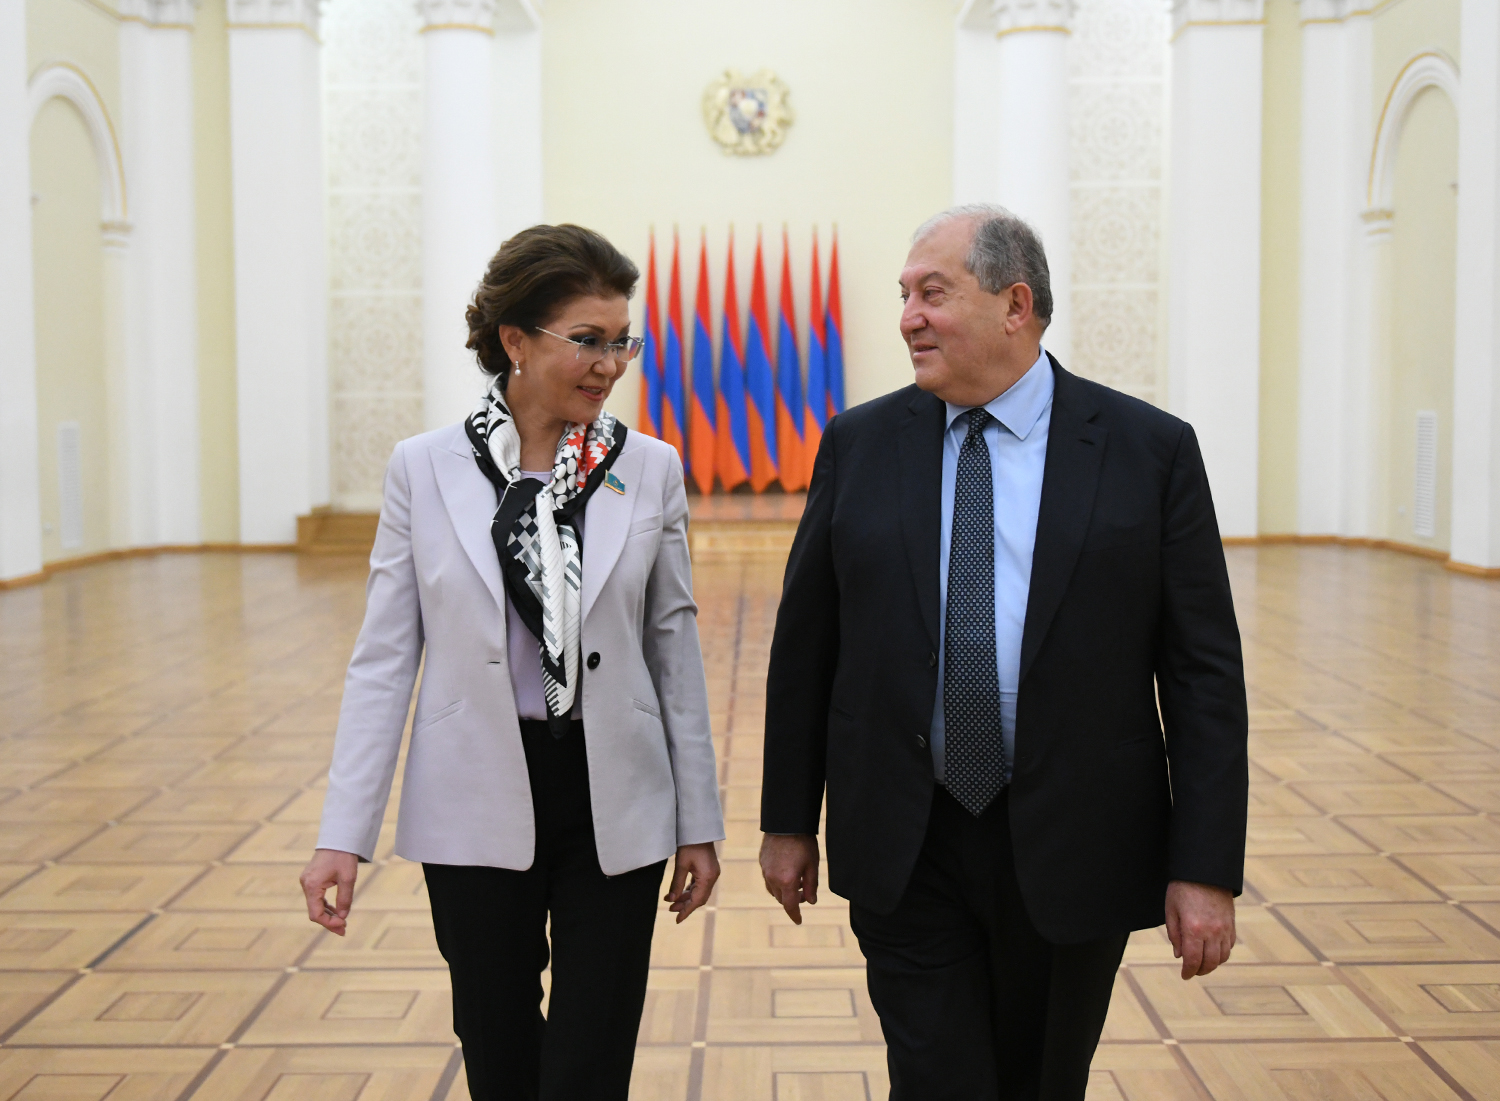 Հաջորդ տարի նախատեսվում է Ղազախստանի նախագահի պաշտոնական այցը Հայաստան